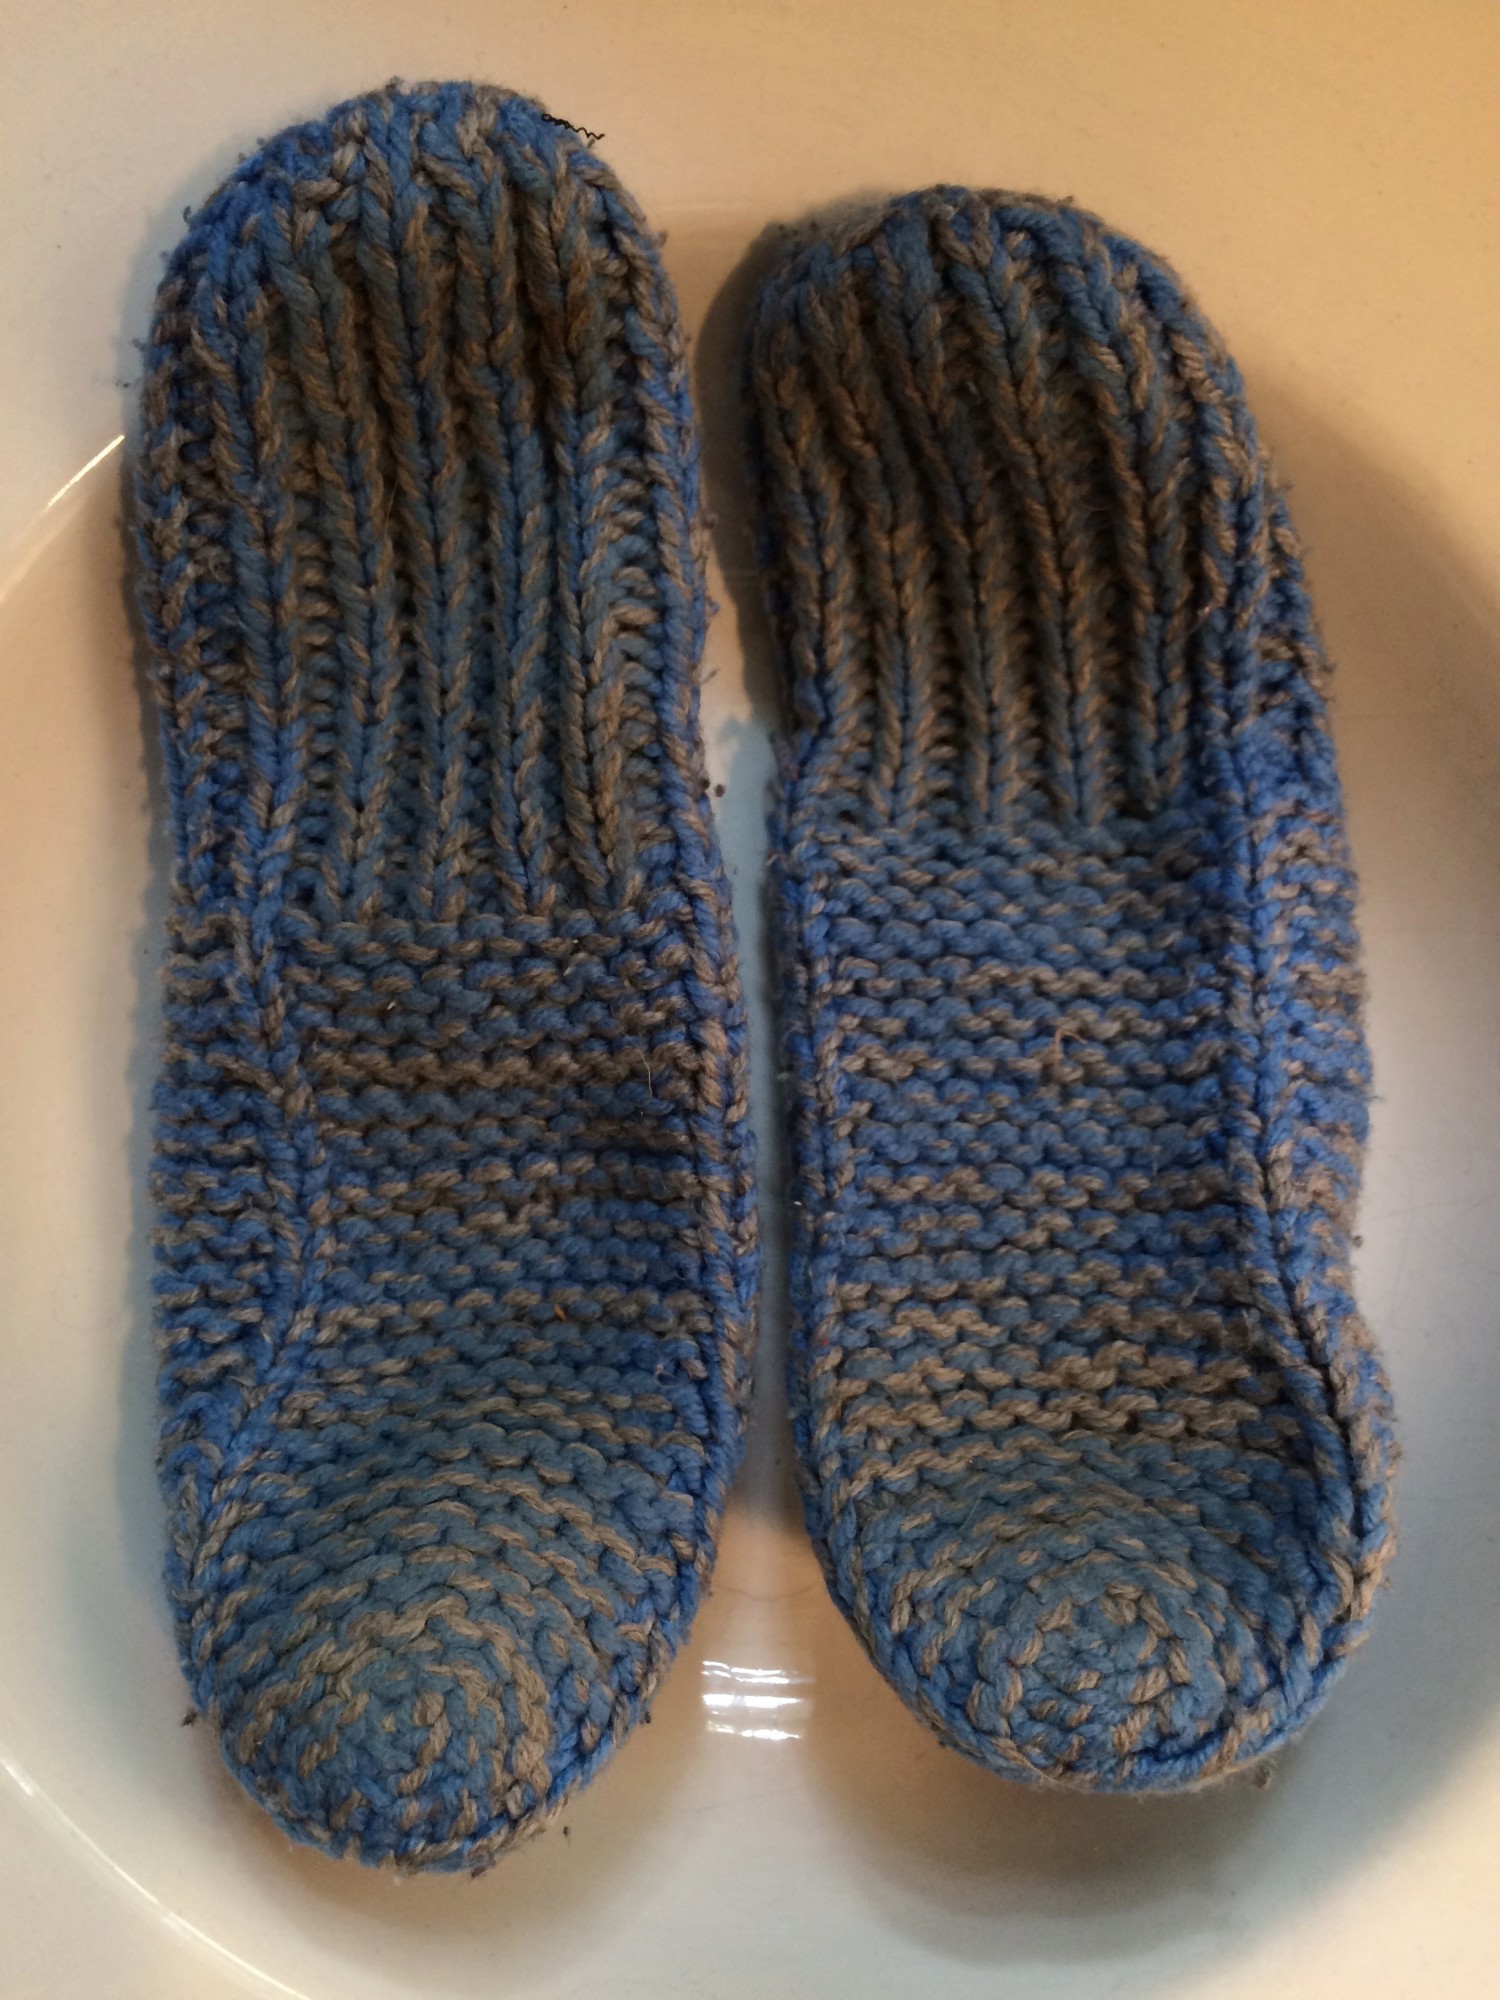 Beginner's knitting - slipper pattern identification ...